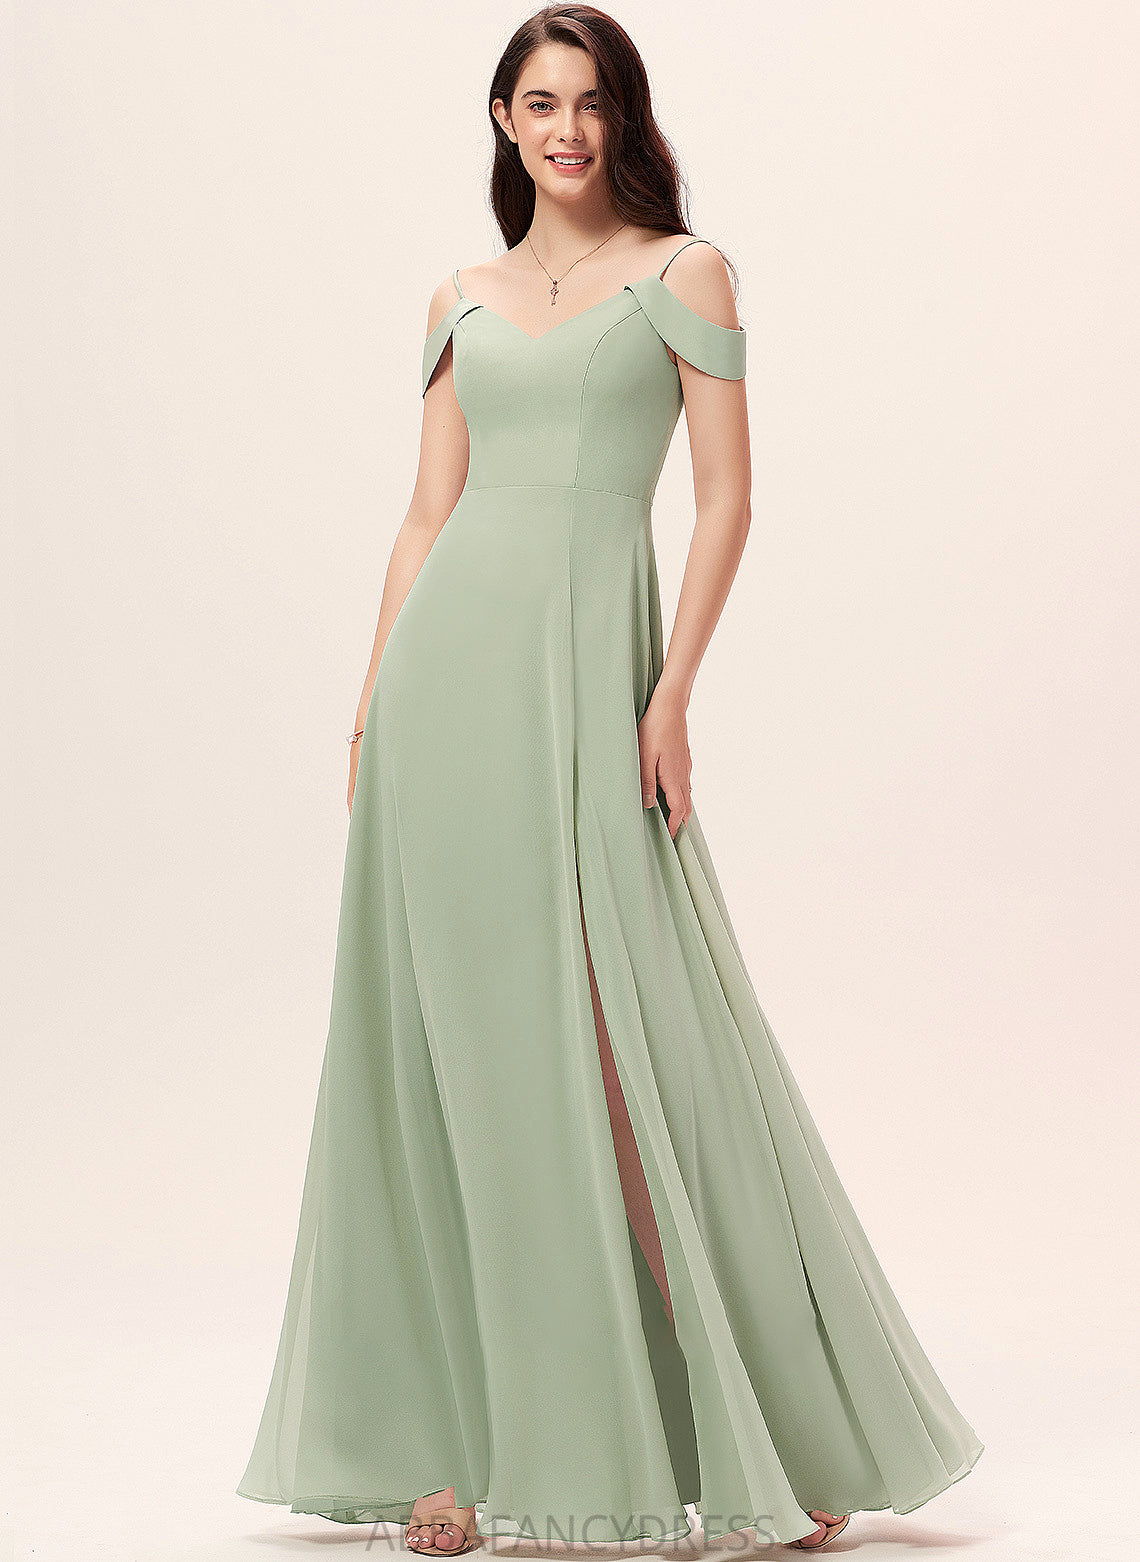 Embellishment Neckline Length Silhouette SplitFront Fabric Floor-Length V-neck A-Line Jaylin A-Line/Princess Sleeveless